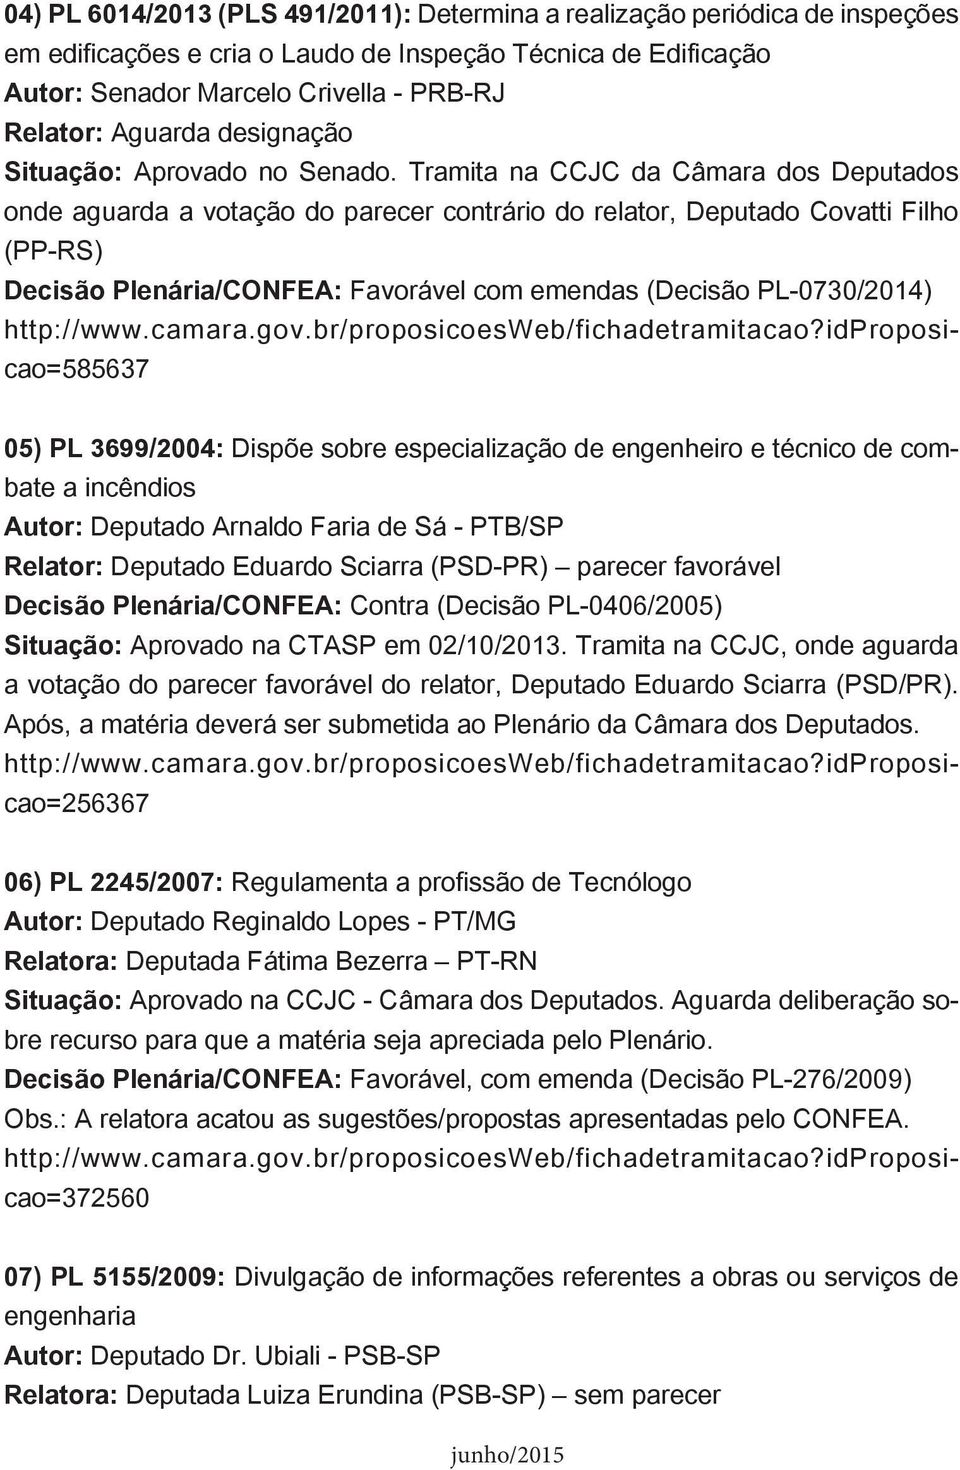 Tramita na CCJC da Câmara dos Deputados onde aguarda a votação do parecer contrário do relator, Deputado Covatti Filho (PP-RS) Decisão Plenária/CONFEA: Favorável com emendas (Decisão PL-0730/2014)